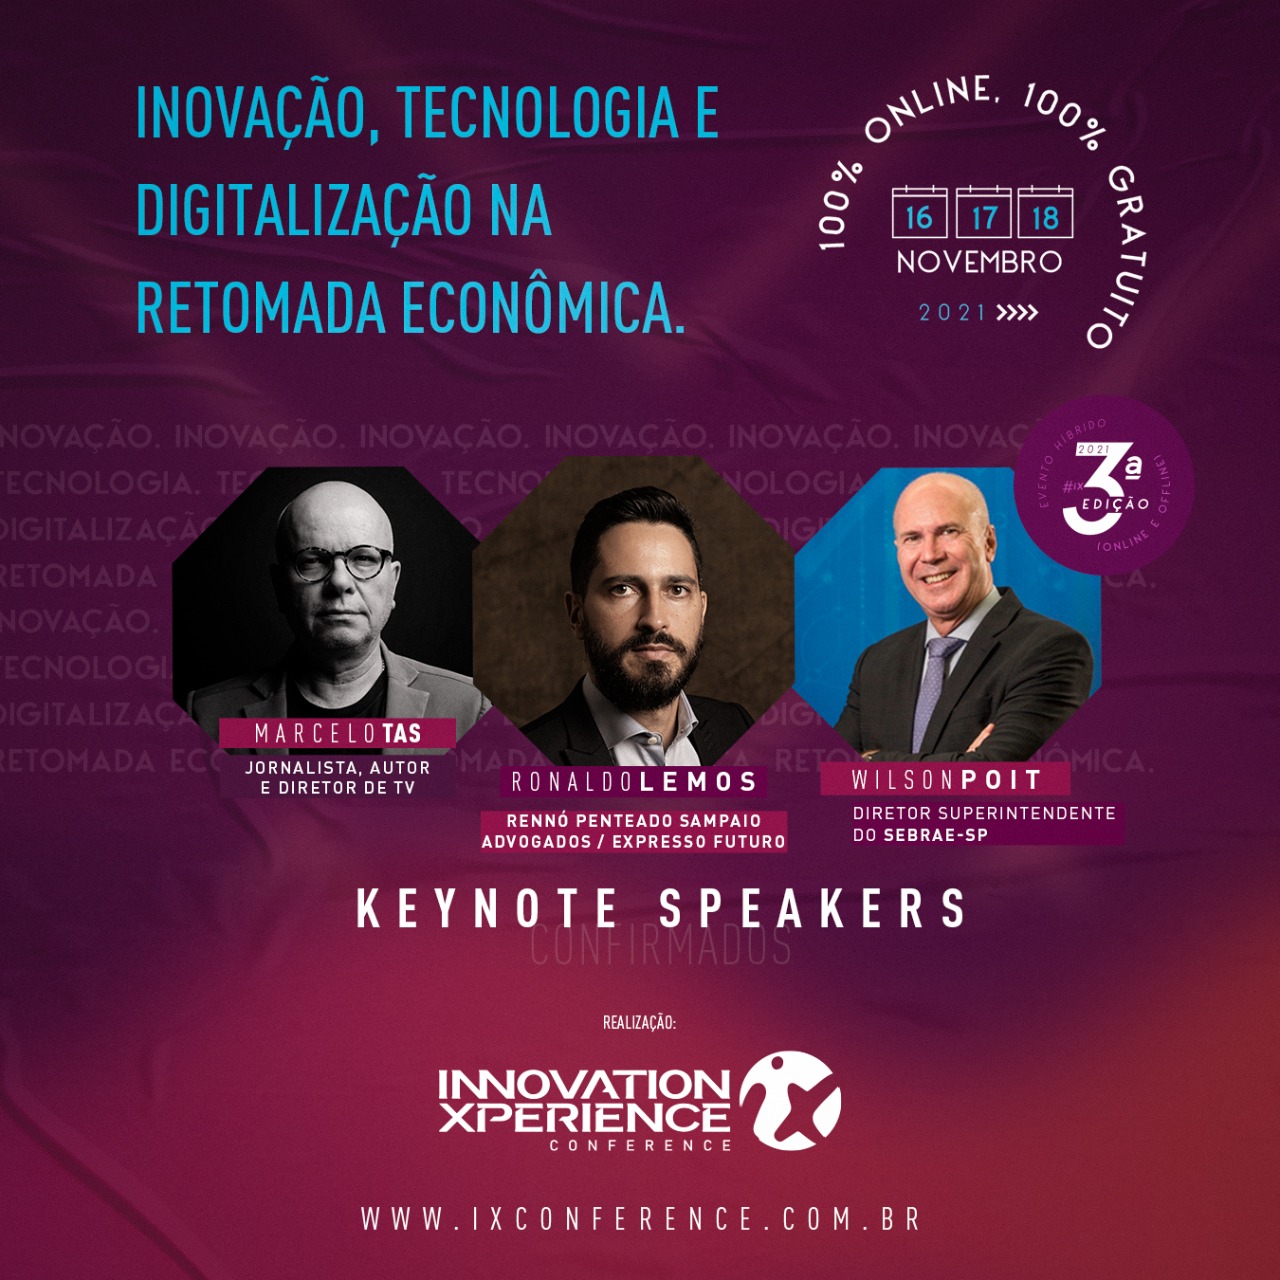 Inovação, Tecnologia e Digitalização na retomada econômica são temas da terceira edição do Innovation Xperience Conference